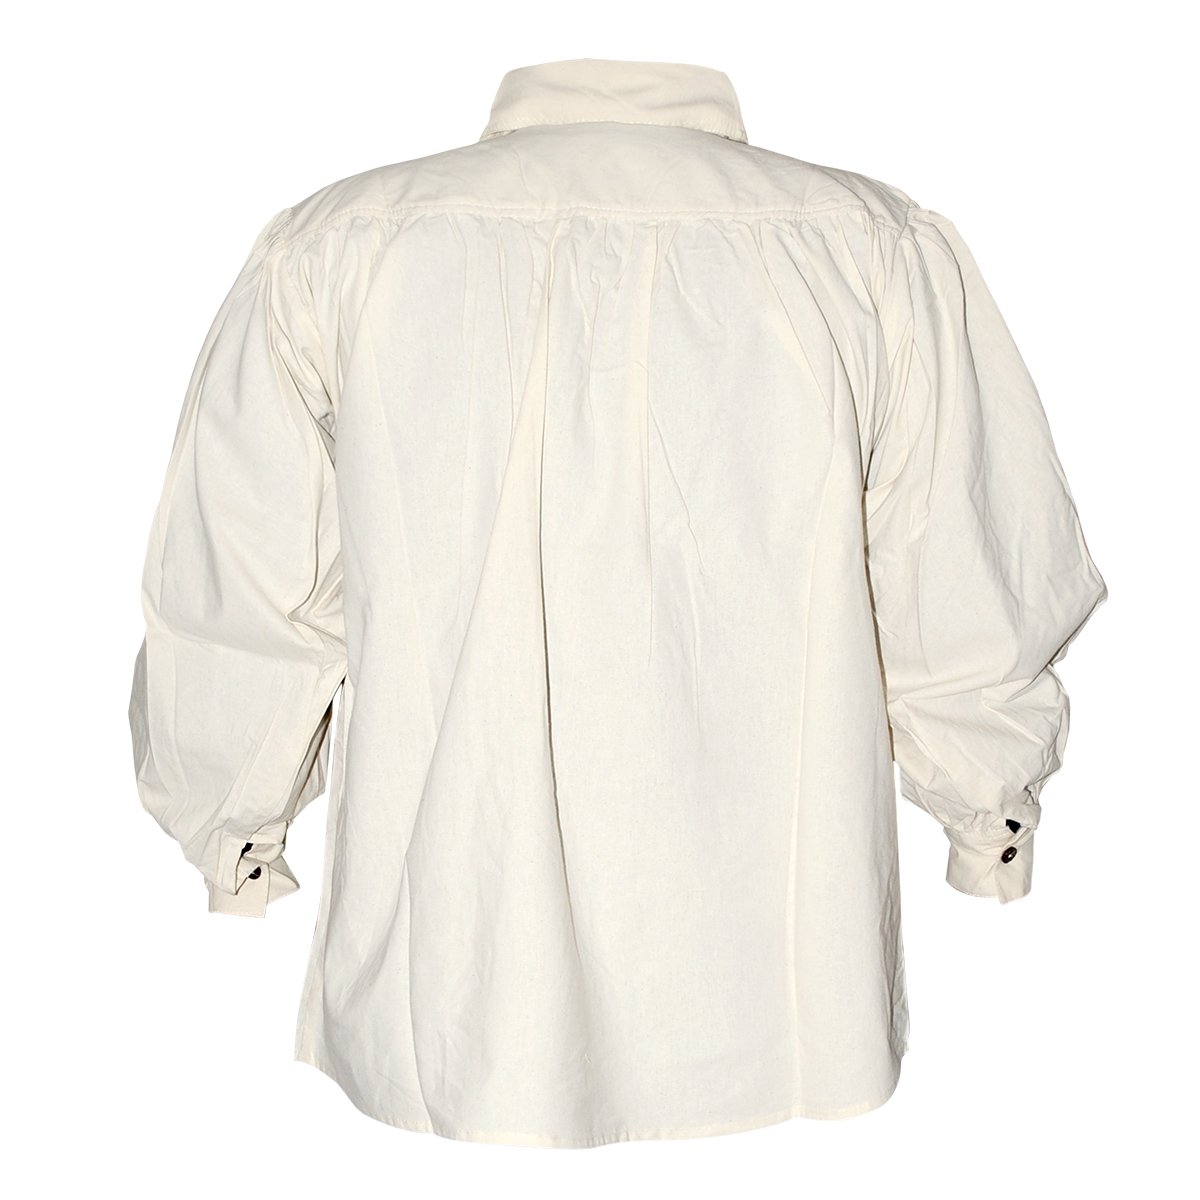 Baumwollhemd mit Kragen und Knopf Ausschnitt – naturfarben, Größe XL